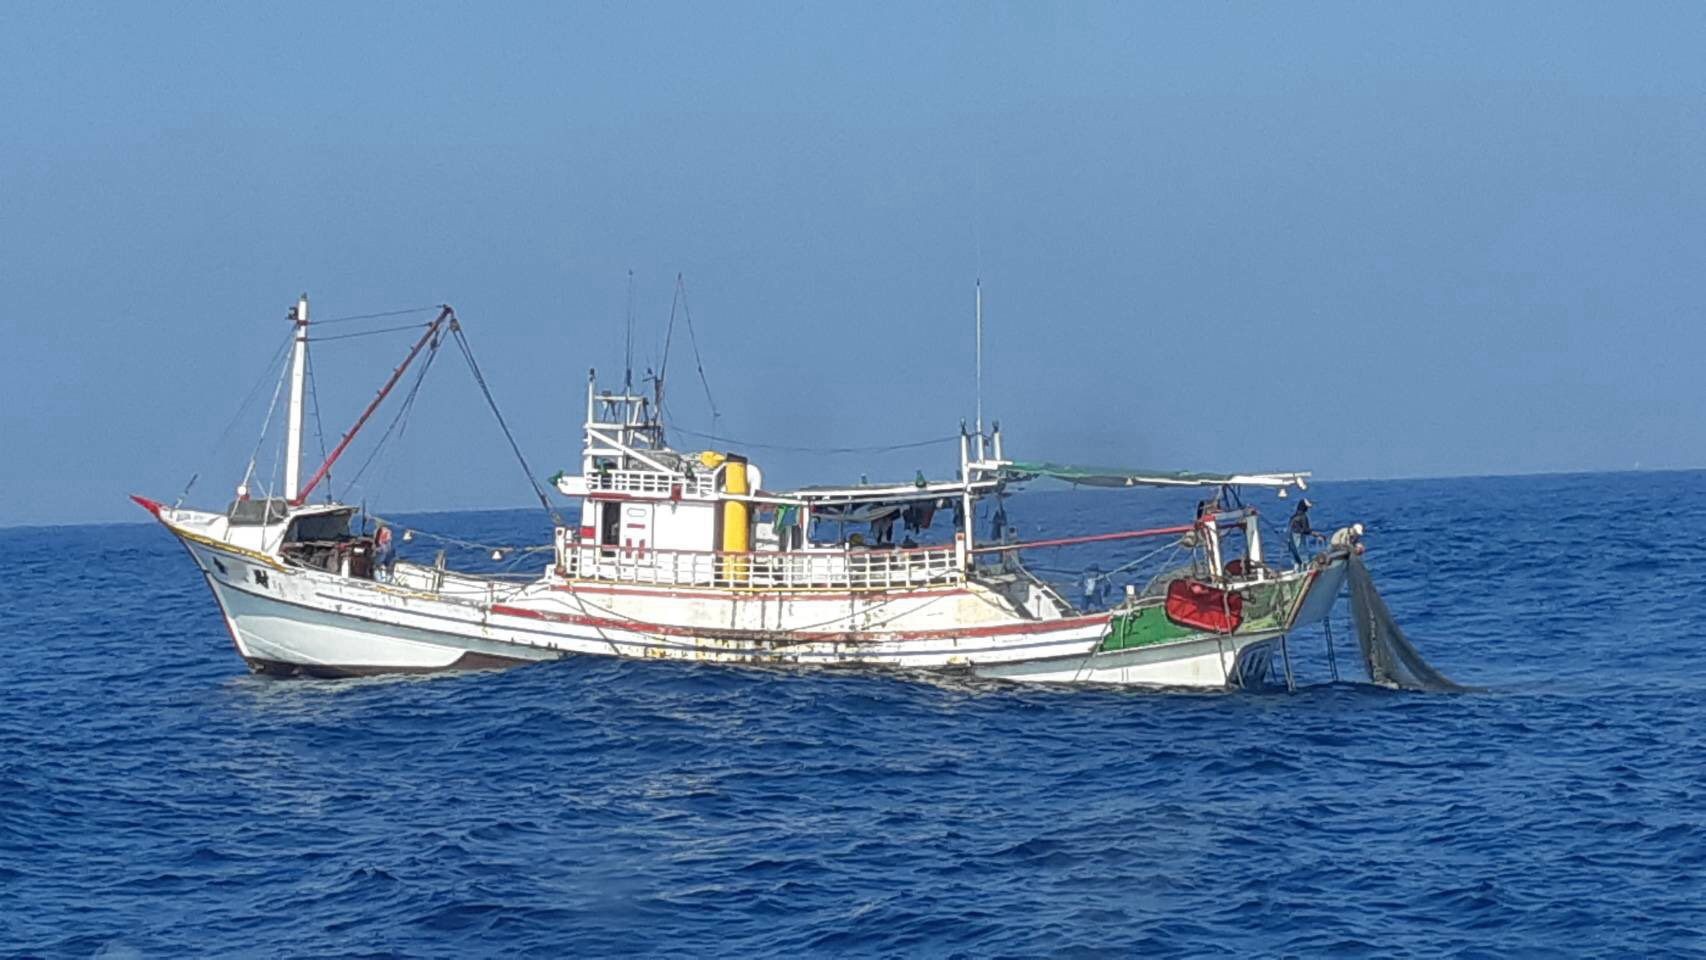 菲籍船员在台湾渔船行凶致1死 台官员下落不明